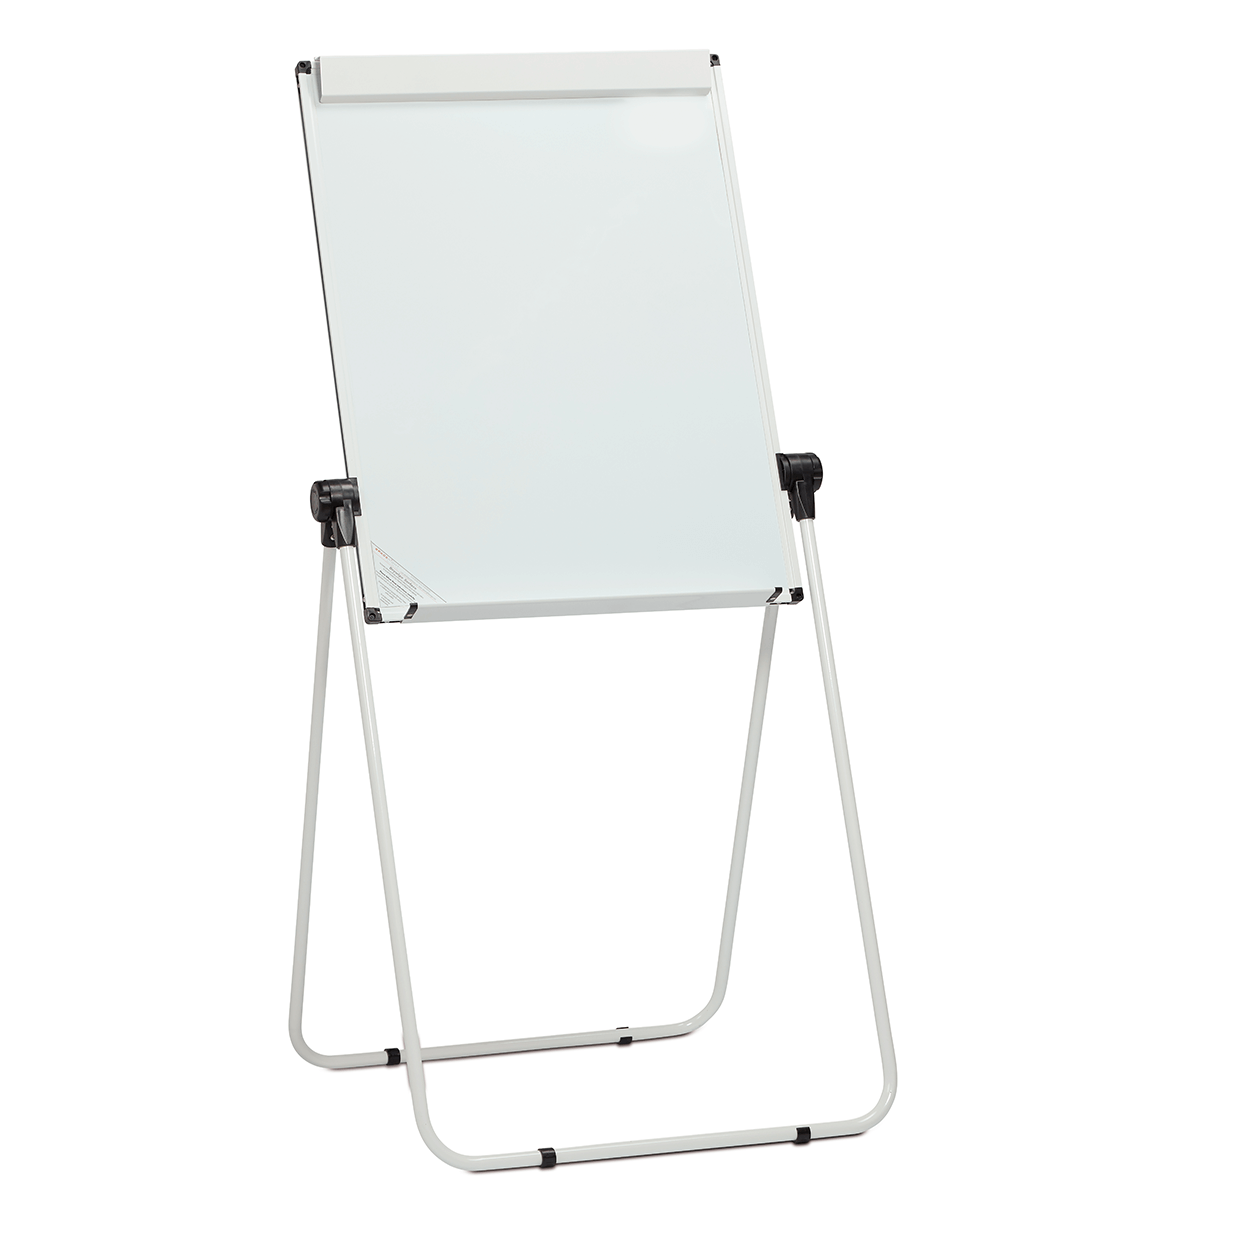 A1 Mobile Flip Chart Easel Aluminium Frame Magnetic White Board